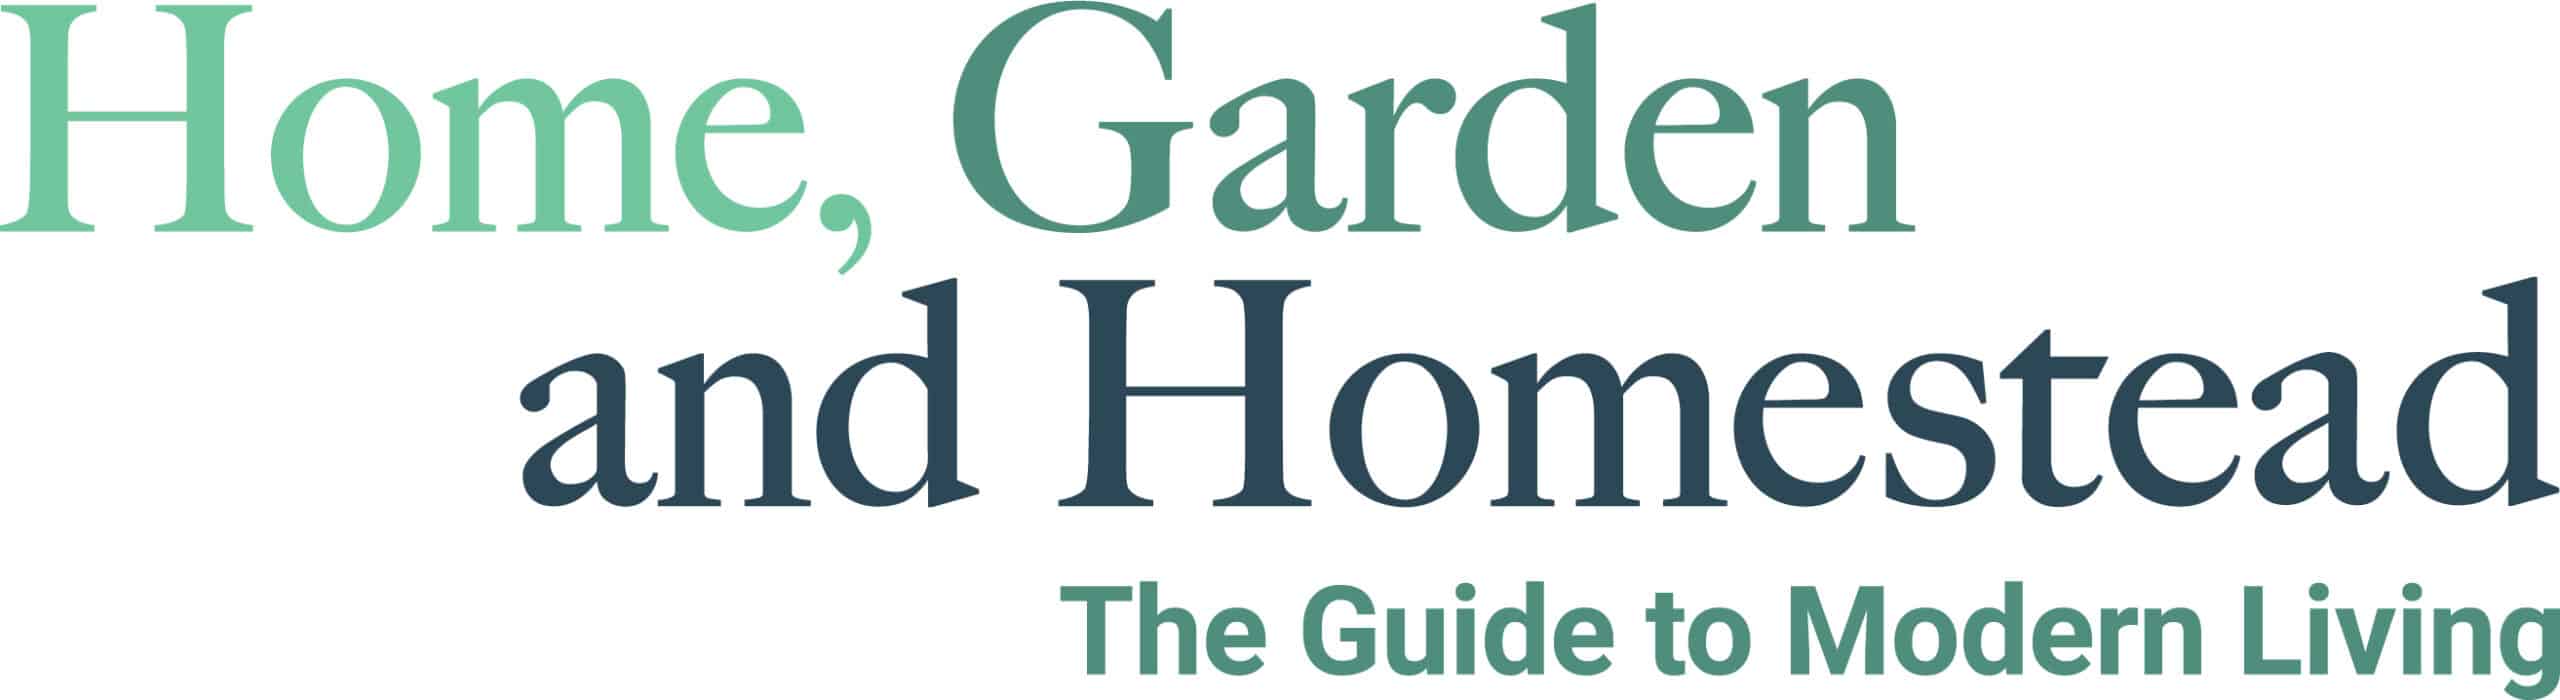 Home Garden and Homestead Logo Nov 22